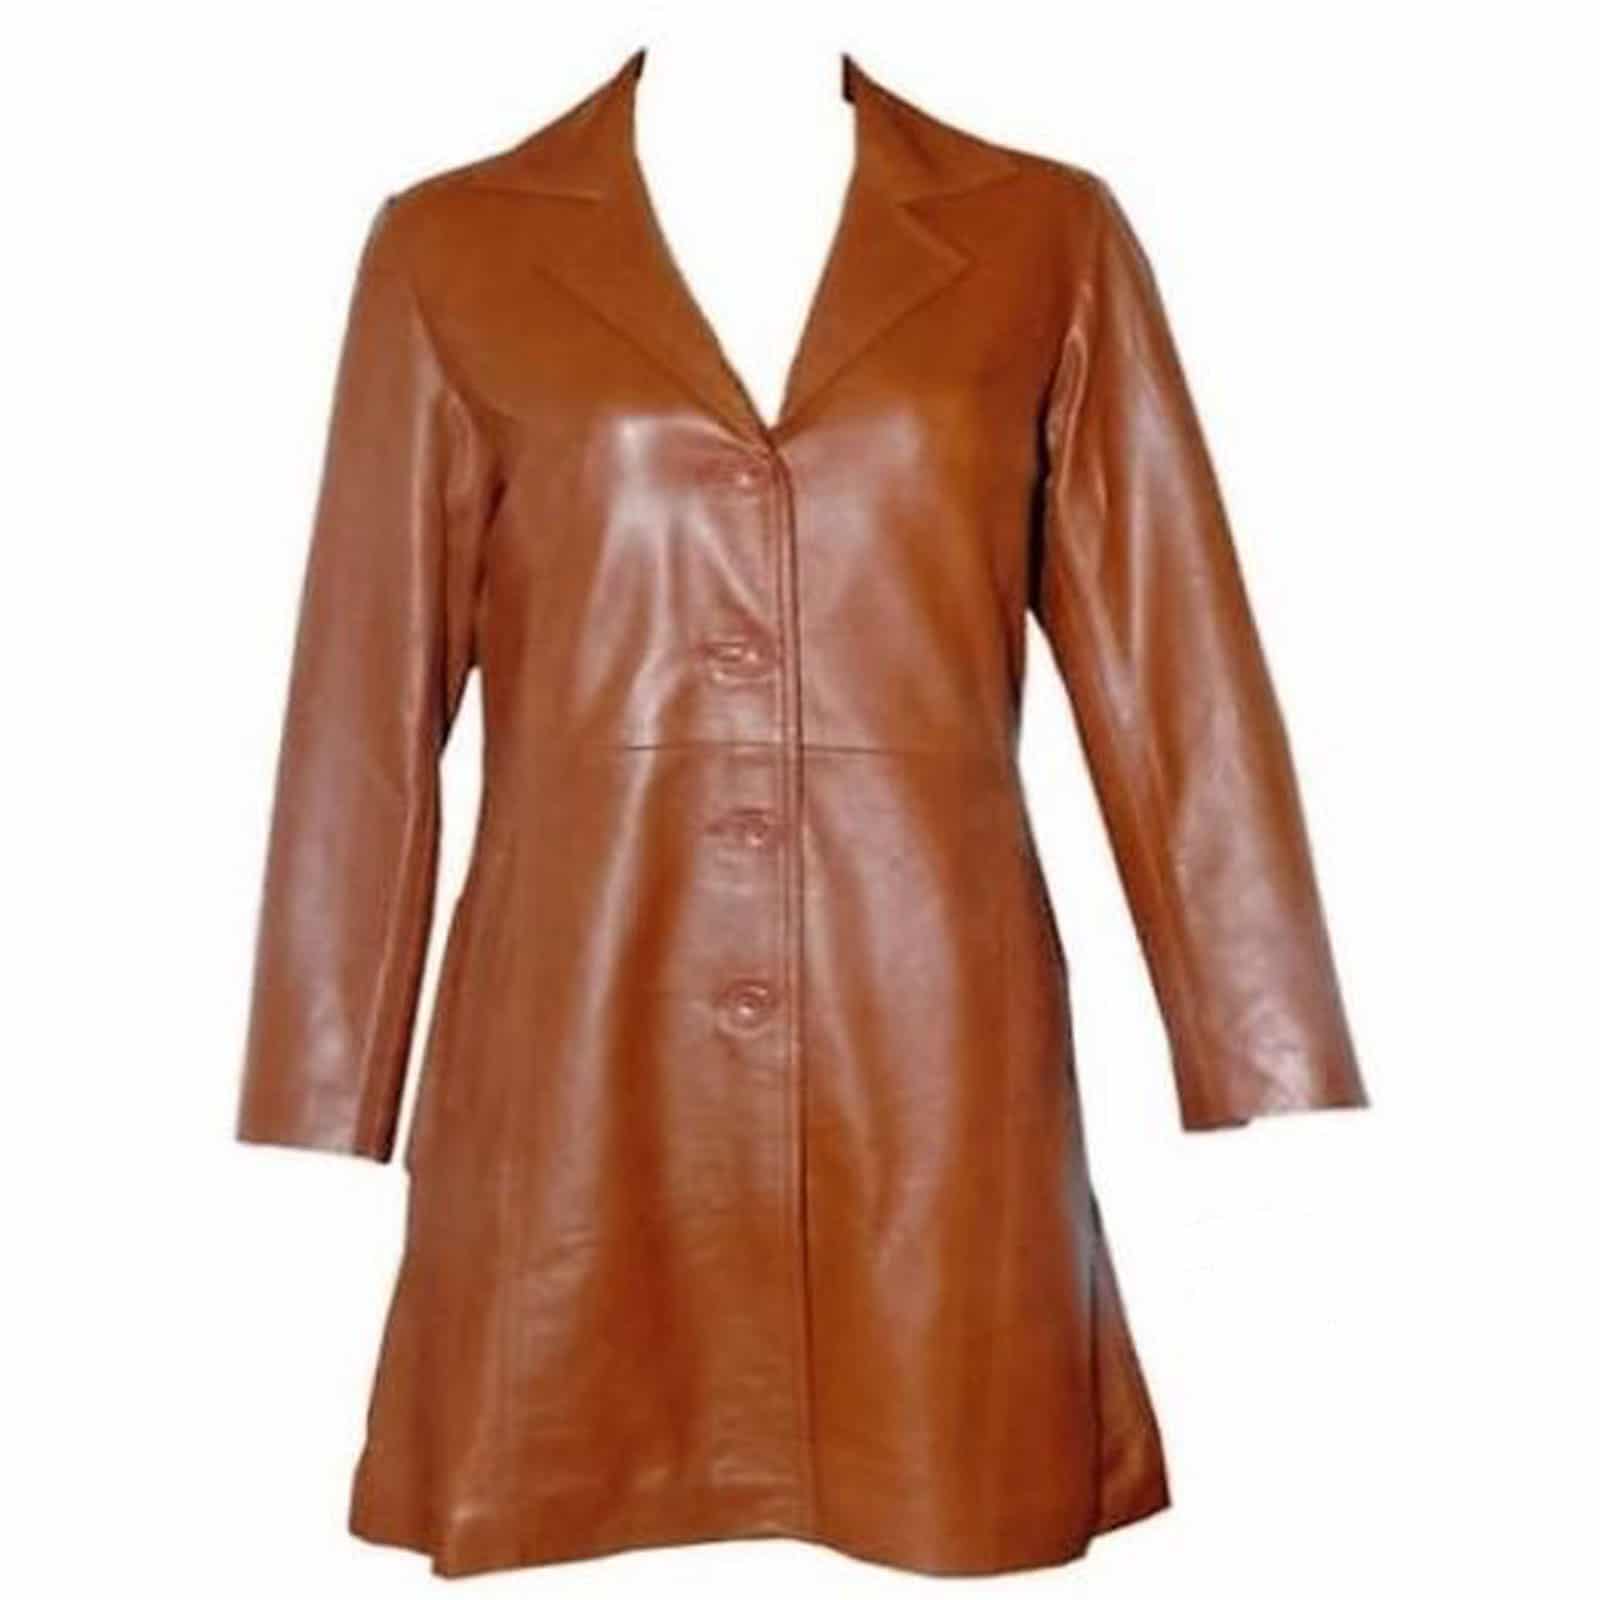 Vintage Style Leather Tailcoat Jacket 